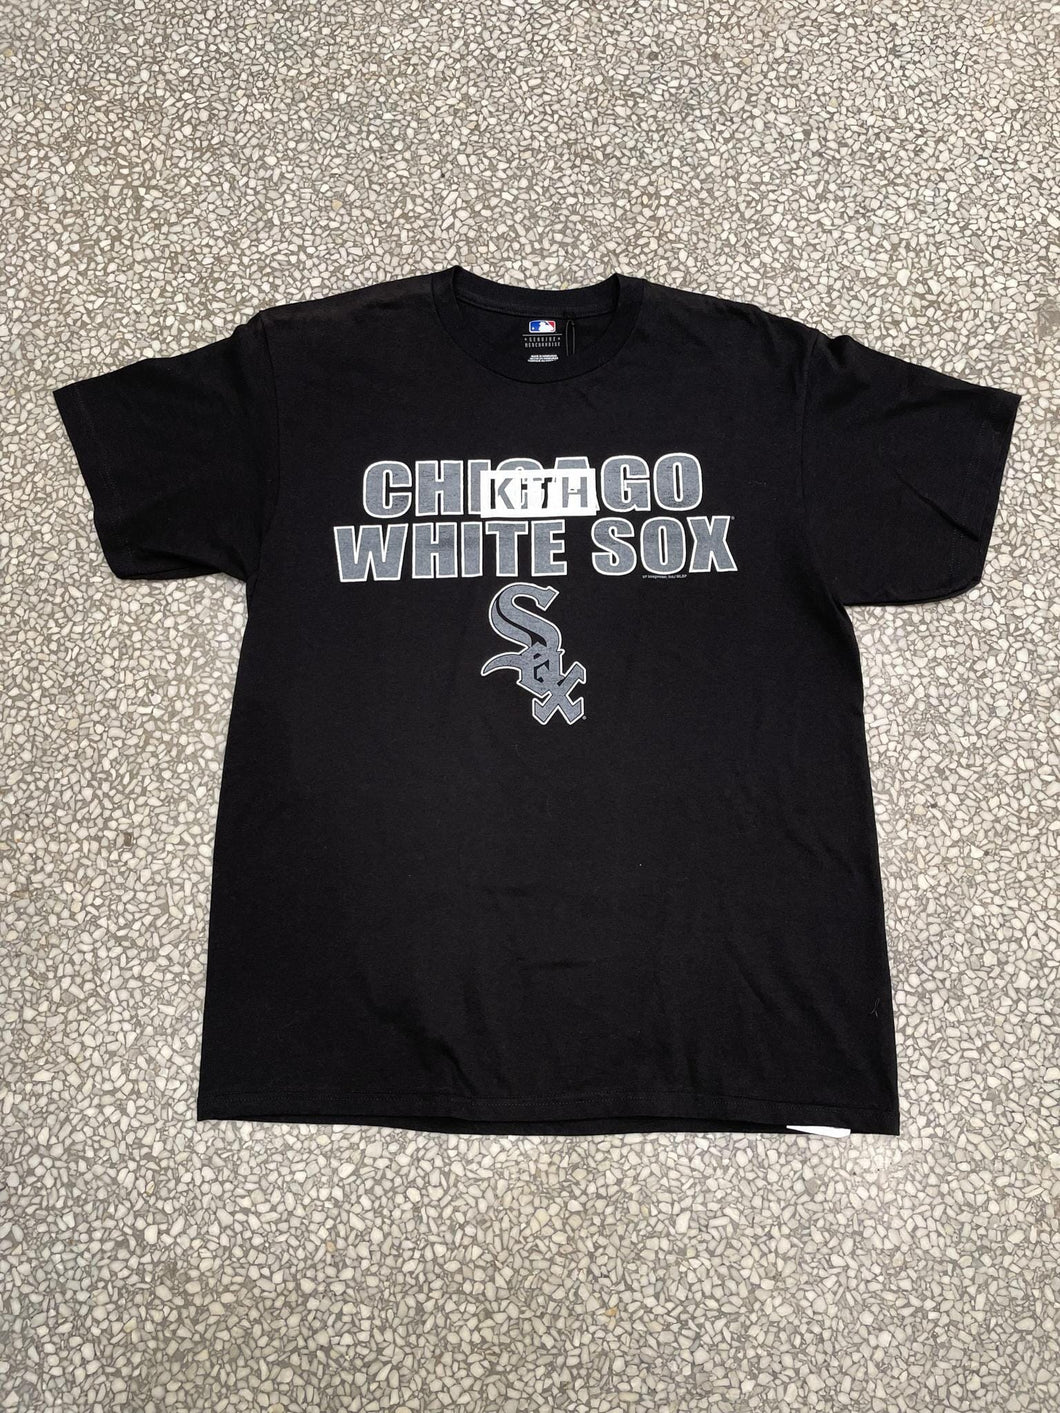 Kith Box Logo Chicago White Sox 1 of 1 Tee ABC Vintage 